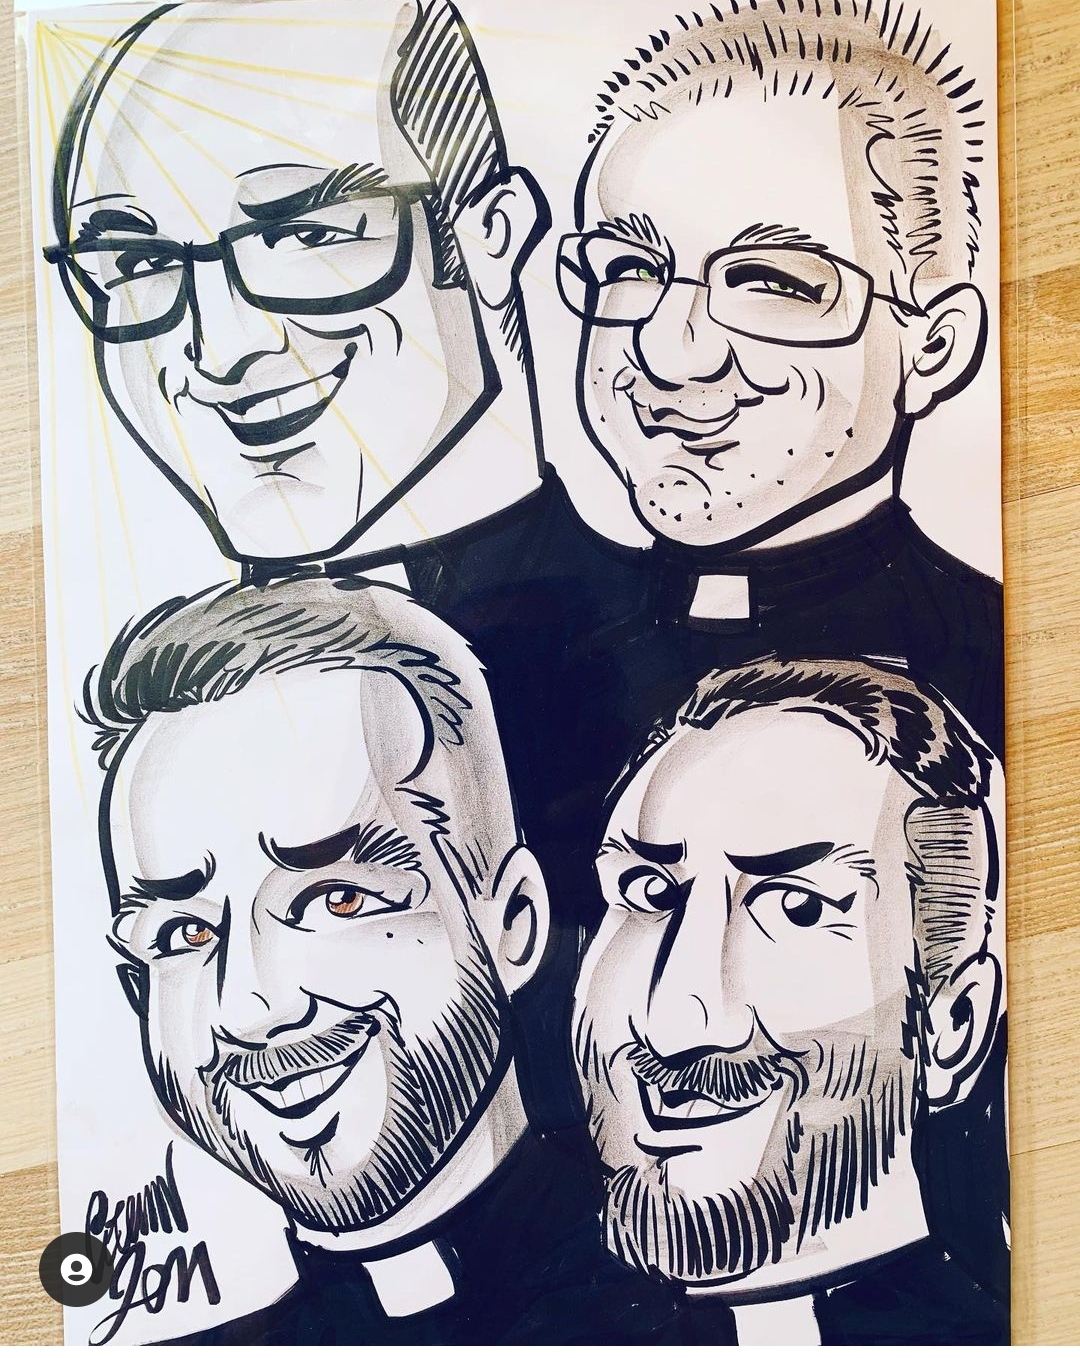 Che Finestra sul Mondo d’Autore i giovani sacerdoti cremaschi, tra la gente, ripresi in caricatura